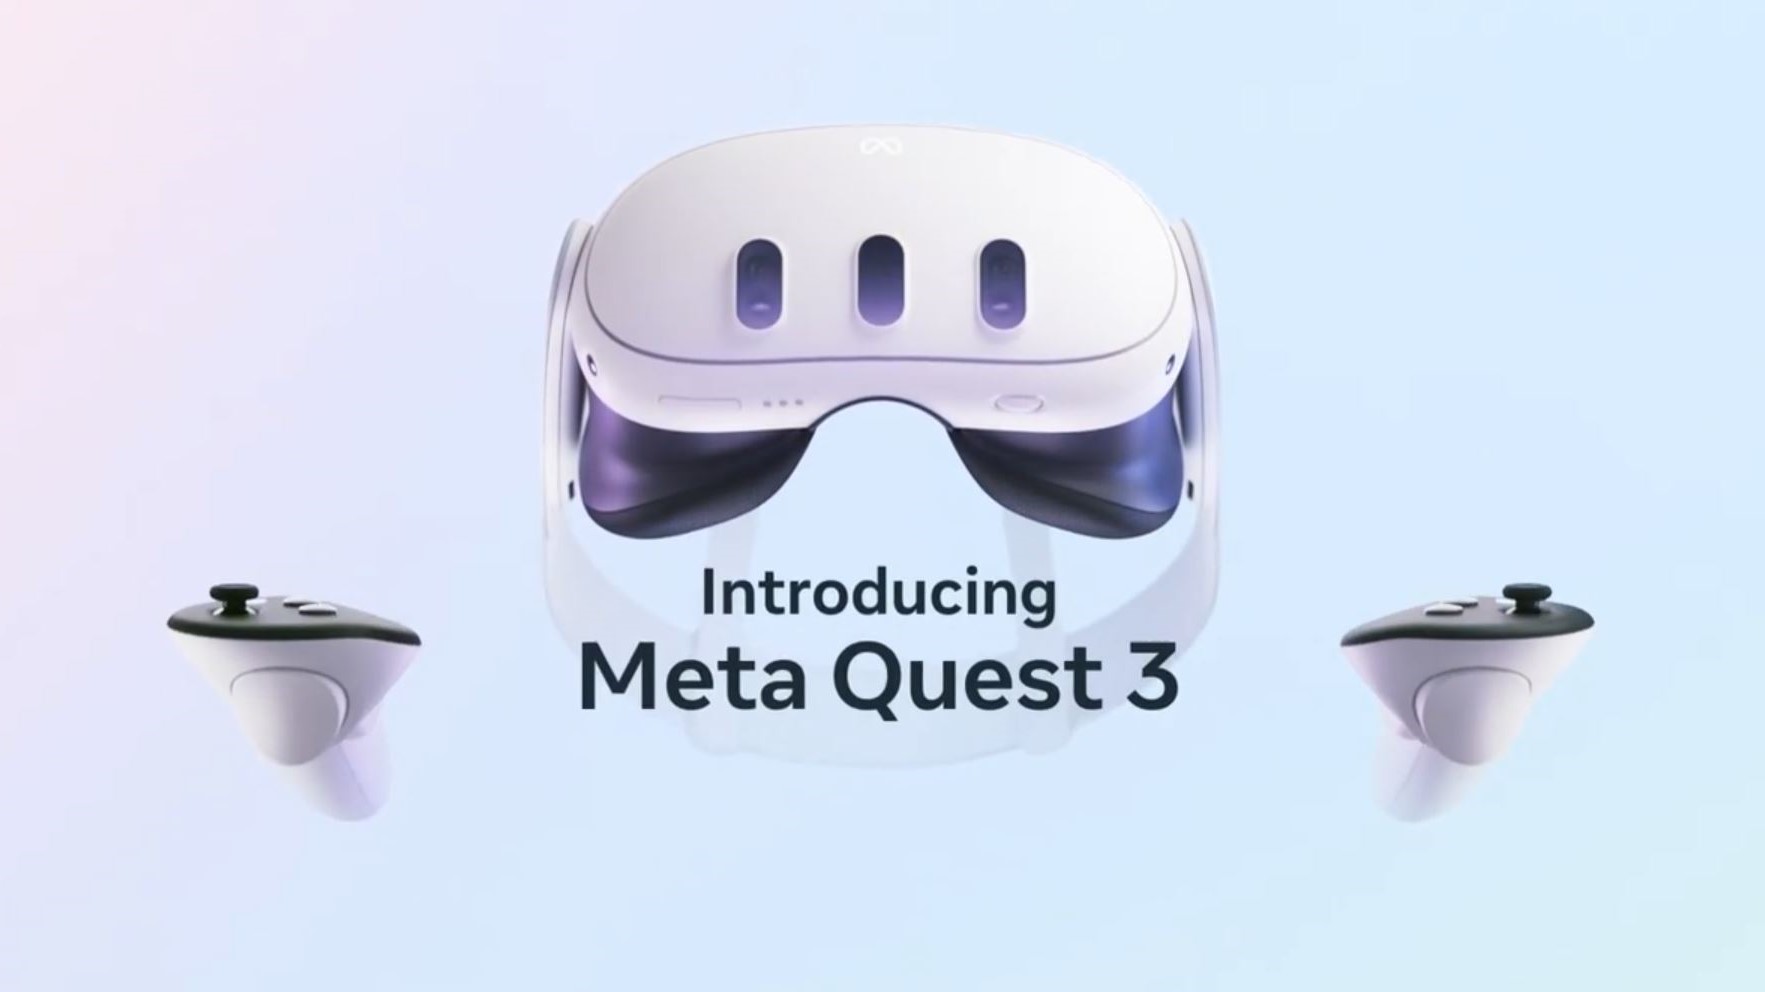 Meta Presenta Las Oculus Quest 3 Su Dispositivo De Realidad Virtual Más Potente Hasta La